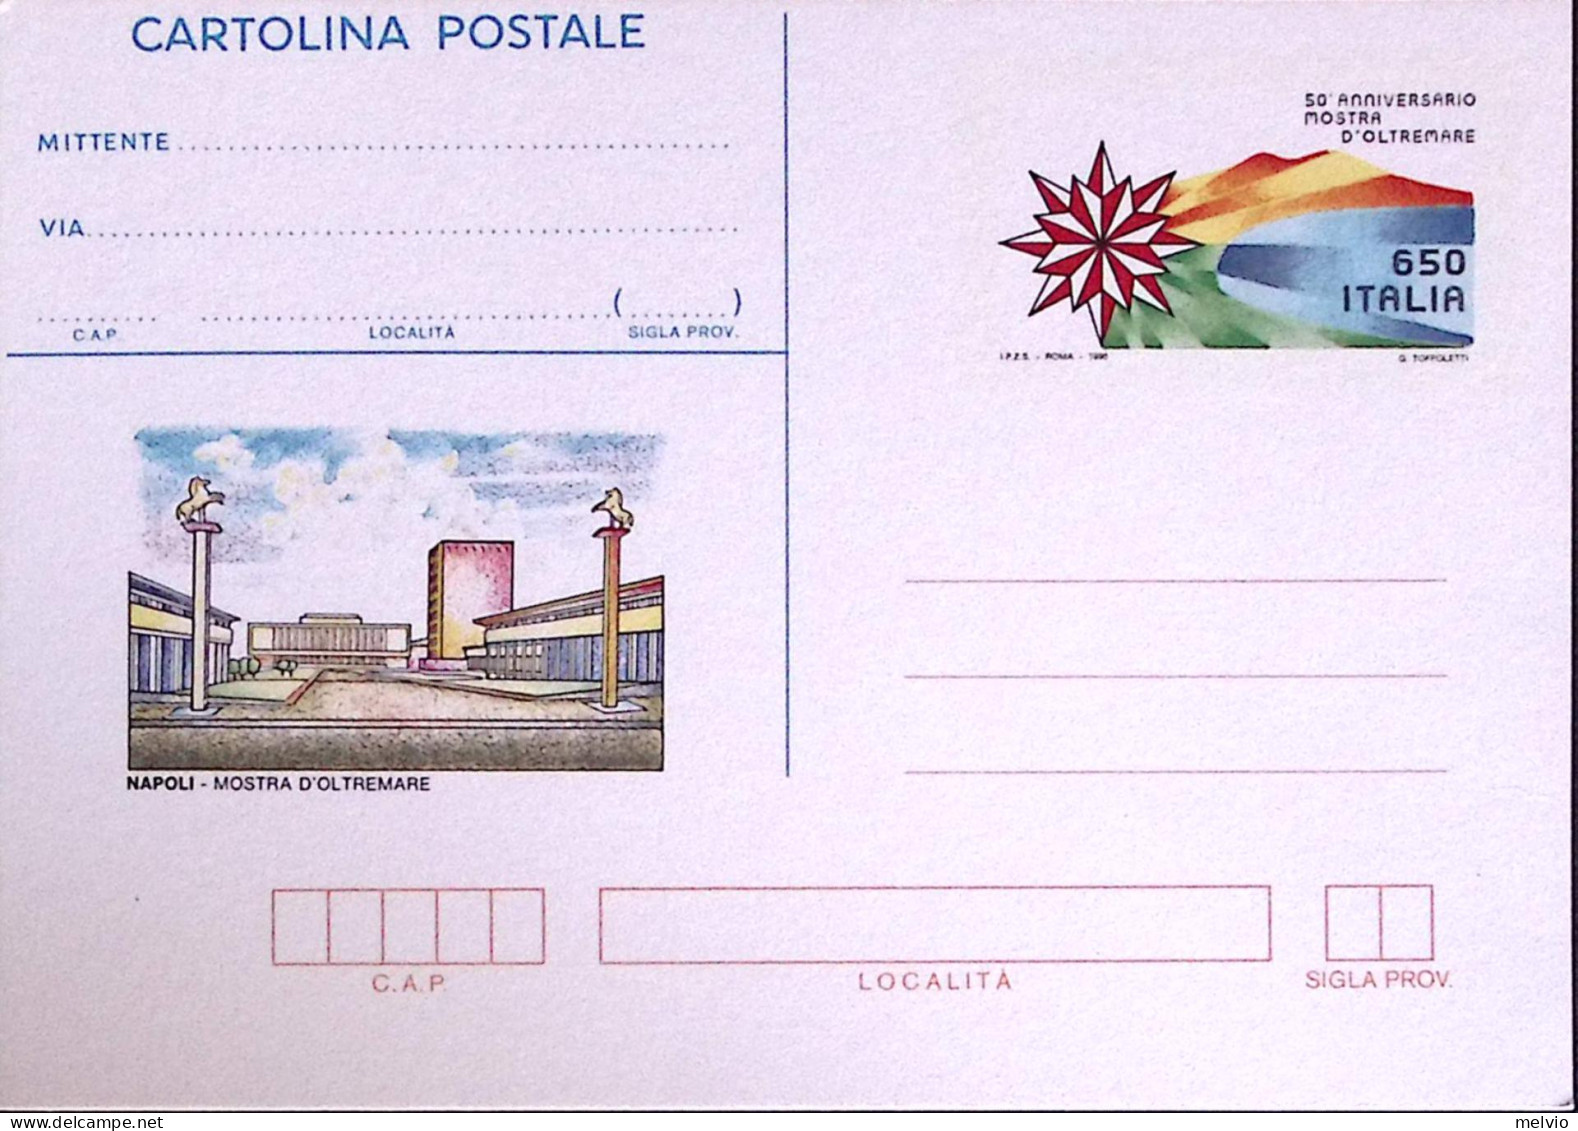 1990-Cartolina Postale Lire 650 Mostra D'oltremare Nuova - Ganzsachen